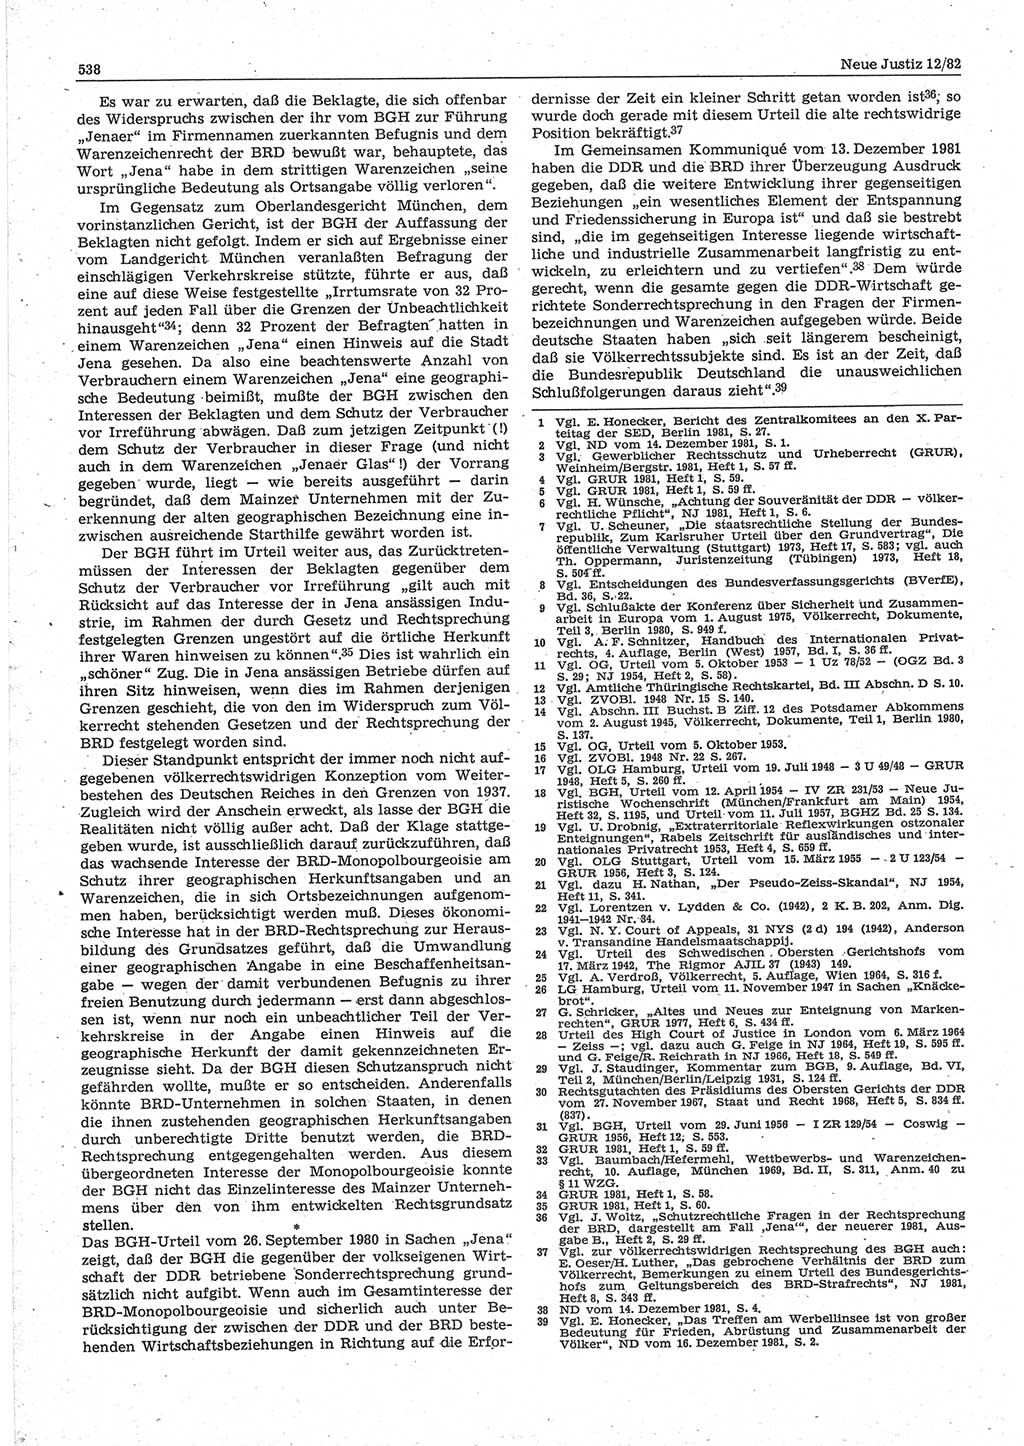 Neue Justiz (NJ), Zeitschrift für sozialistisches Recht und Gesetzlichkeit [Deutsche Demokratische Republik (DDR)], 36. Jahrgang 1982, Seite 538 (NJ DDR 1982, S. 538)